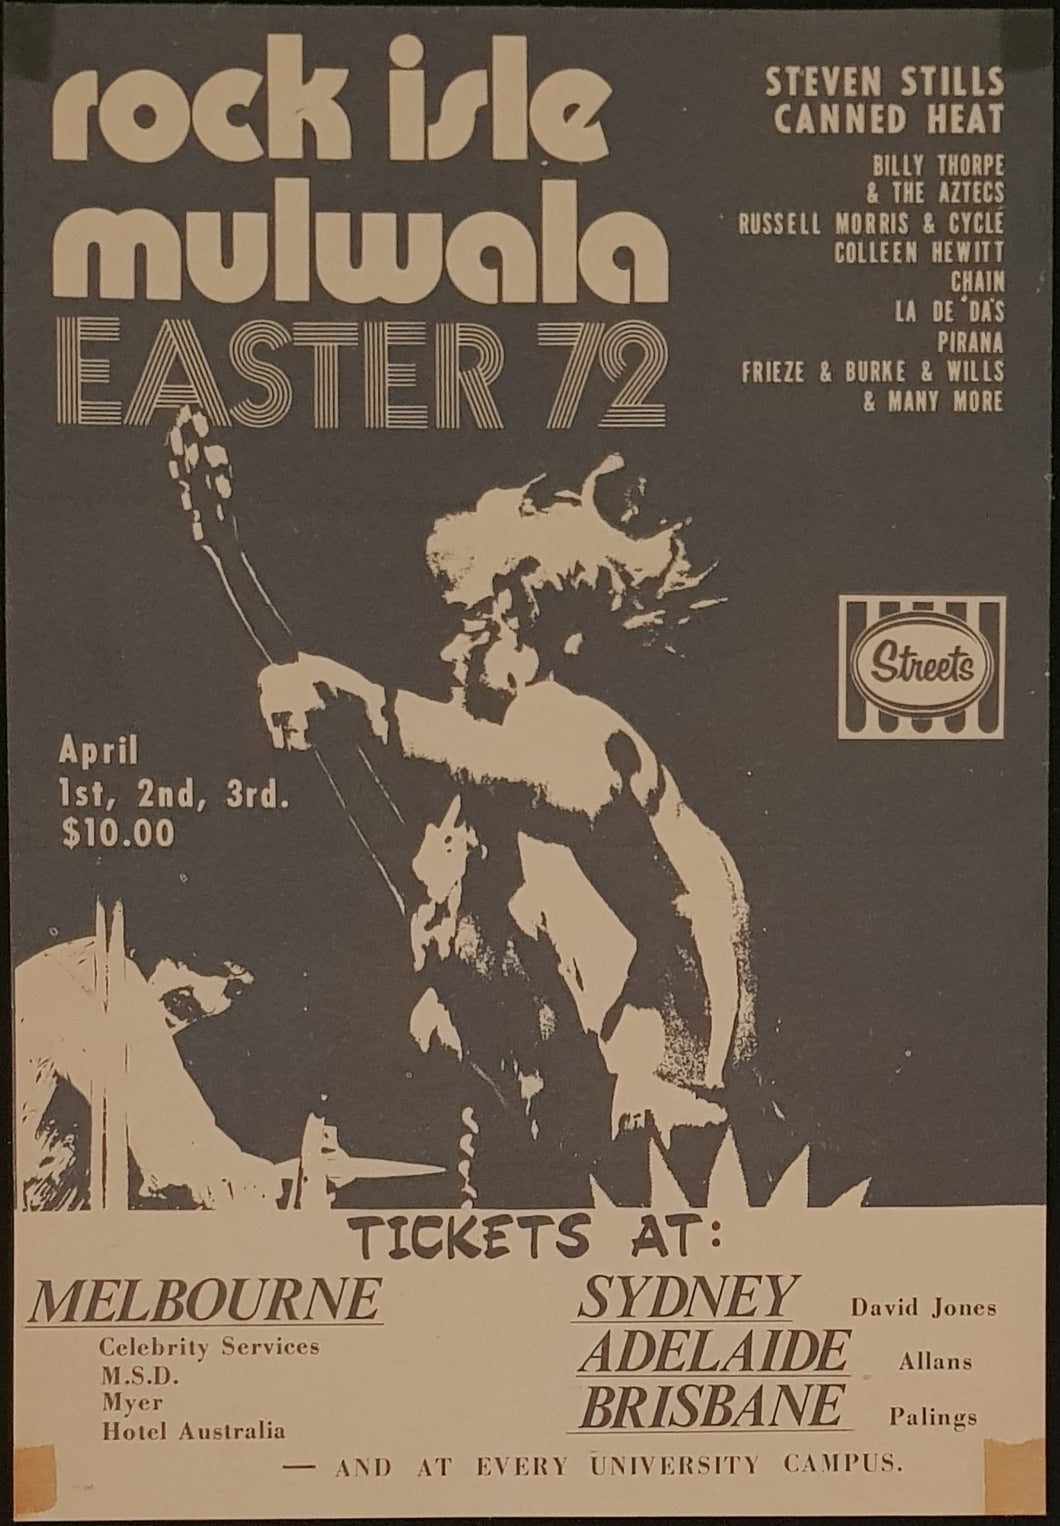 Billy Thorpe & The Aztecs - Rock Isle Mulwala Easter 72